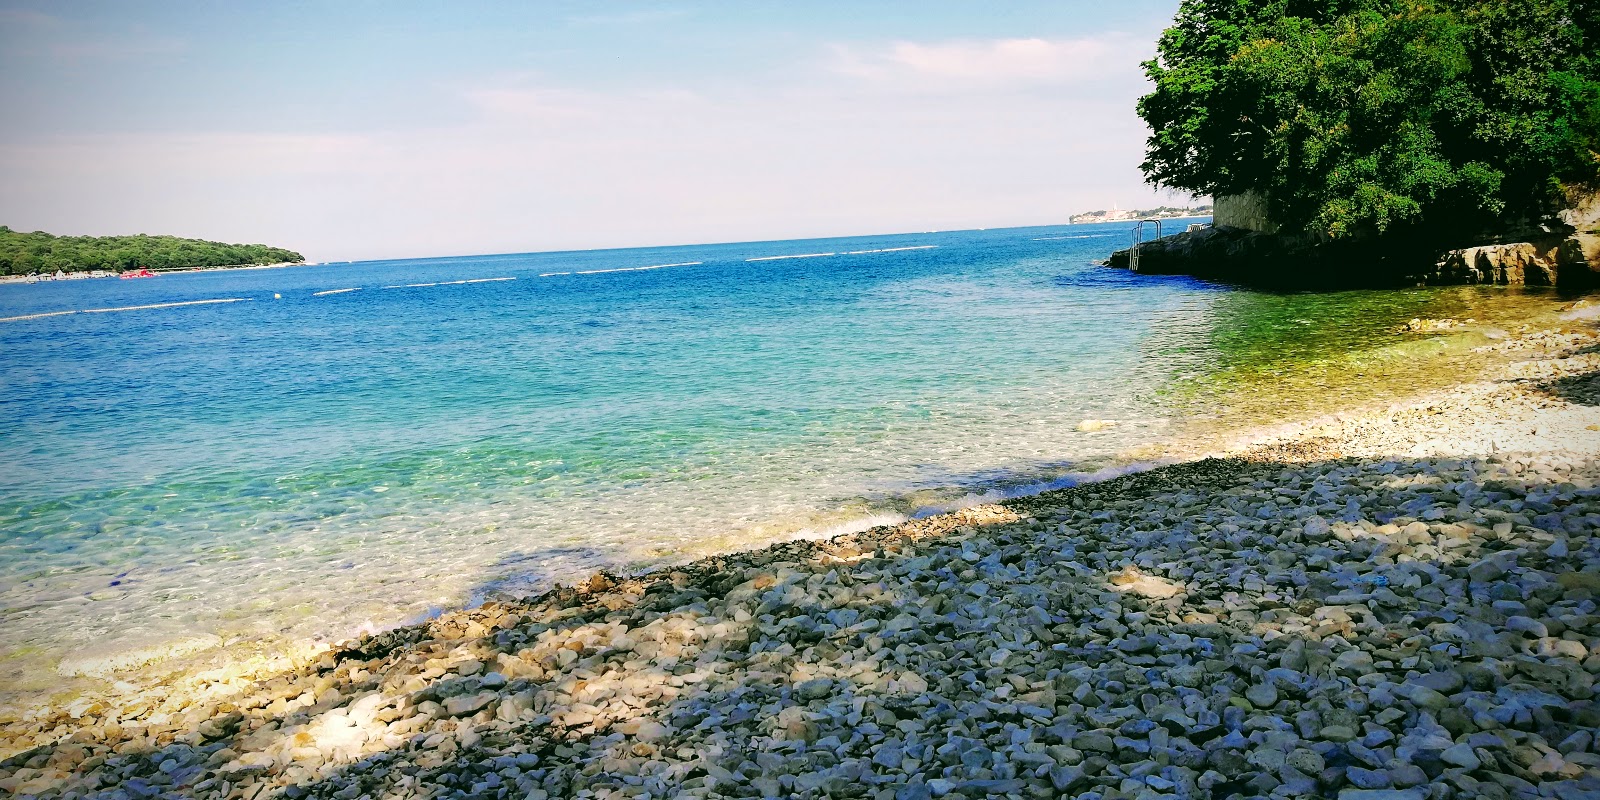 Zdjęcie Crnika beach - popularne miejsce wśród znawców relaksu